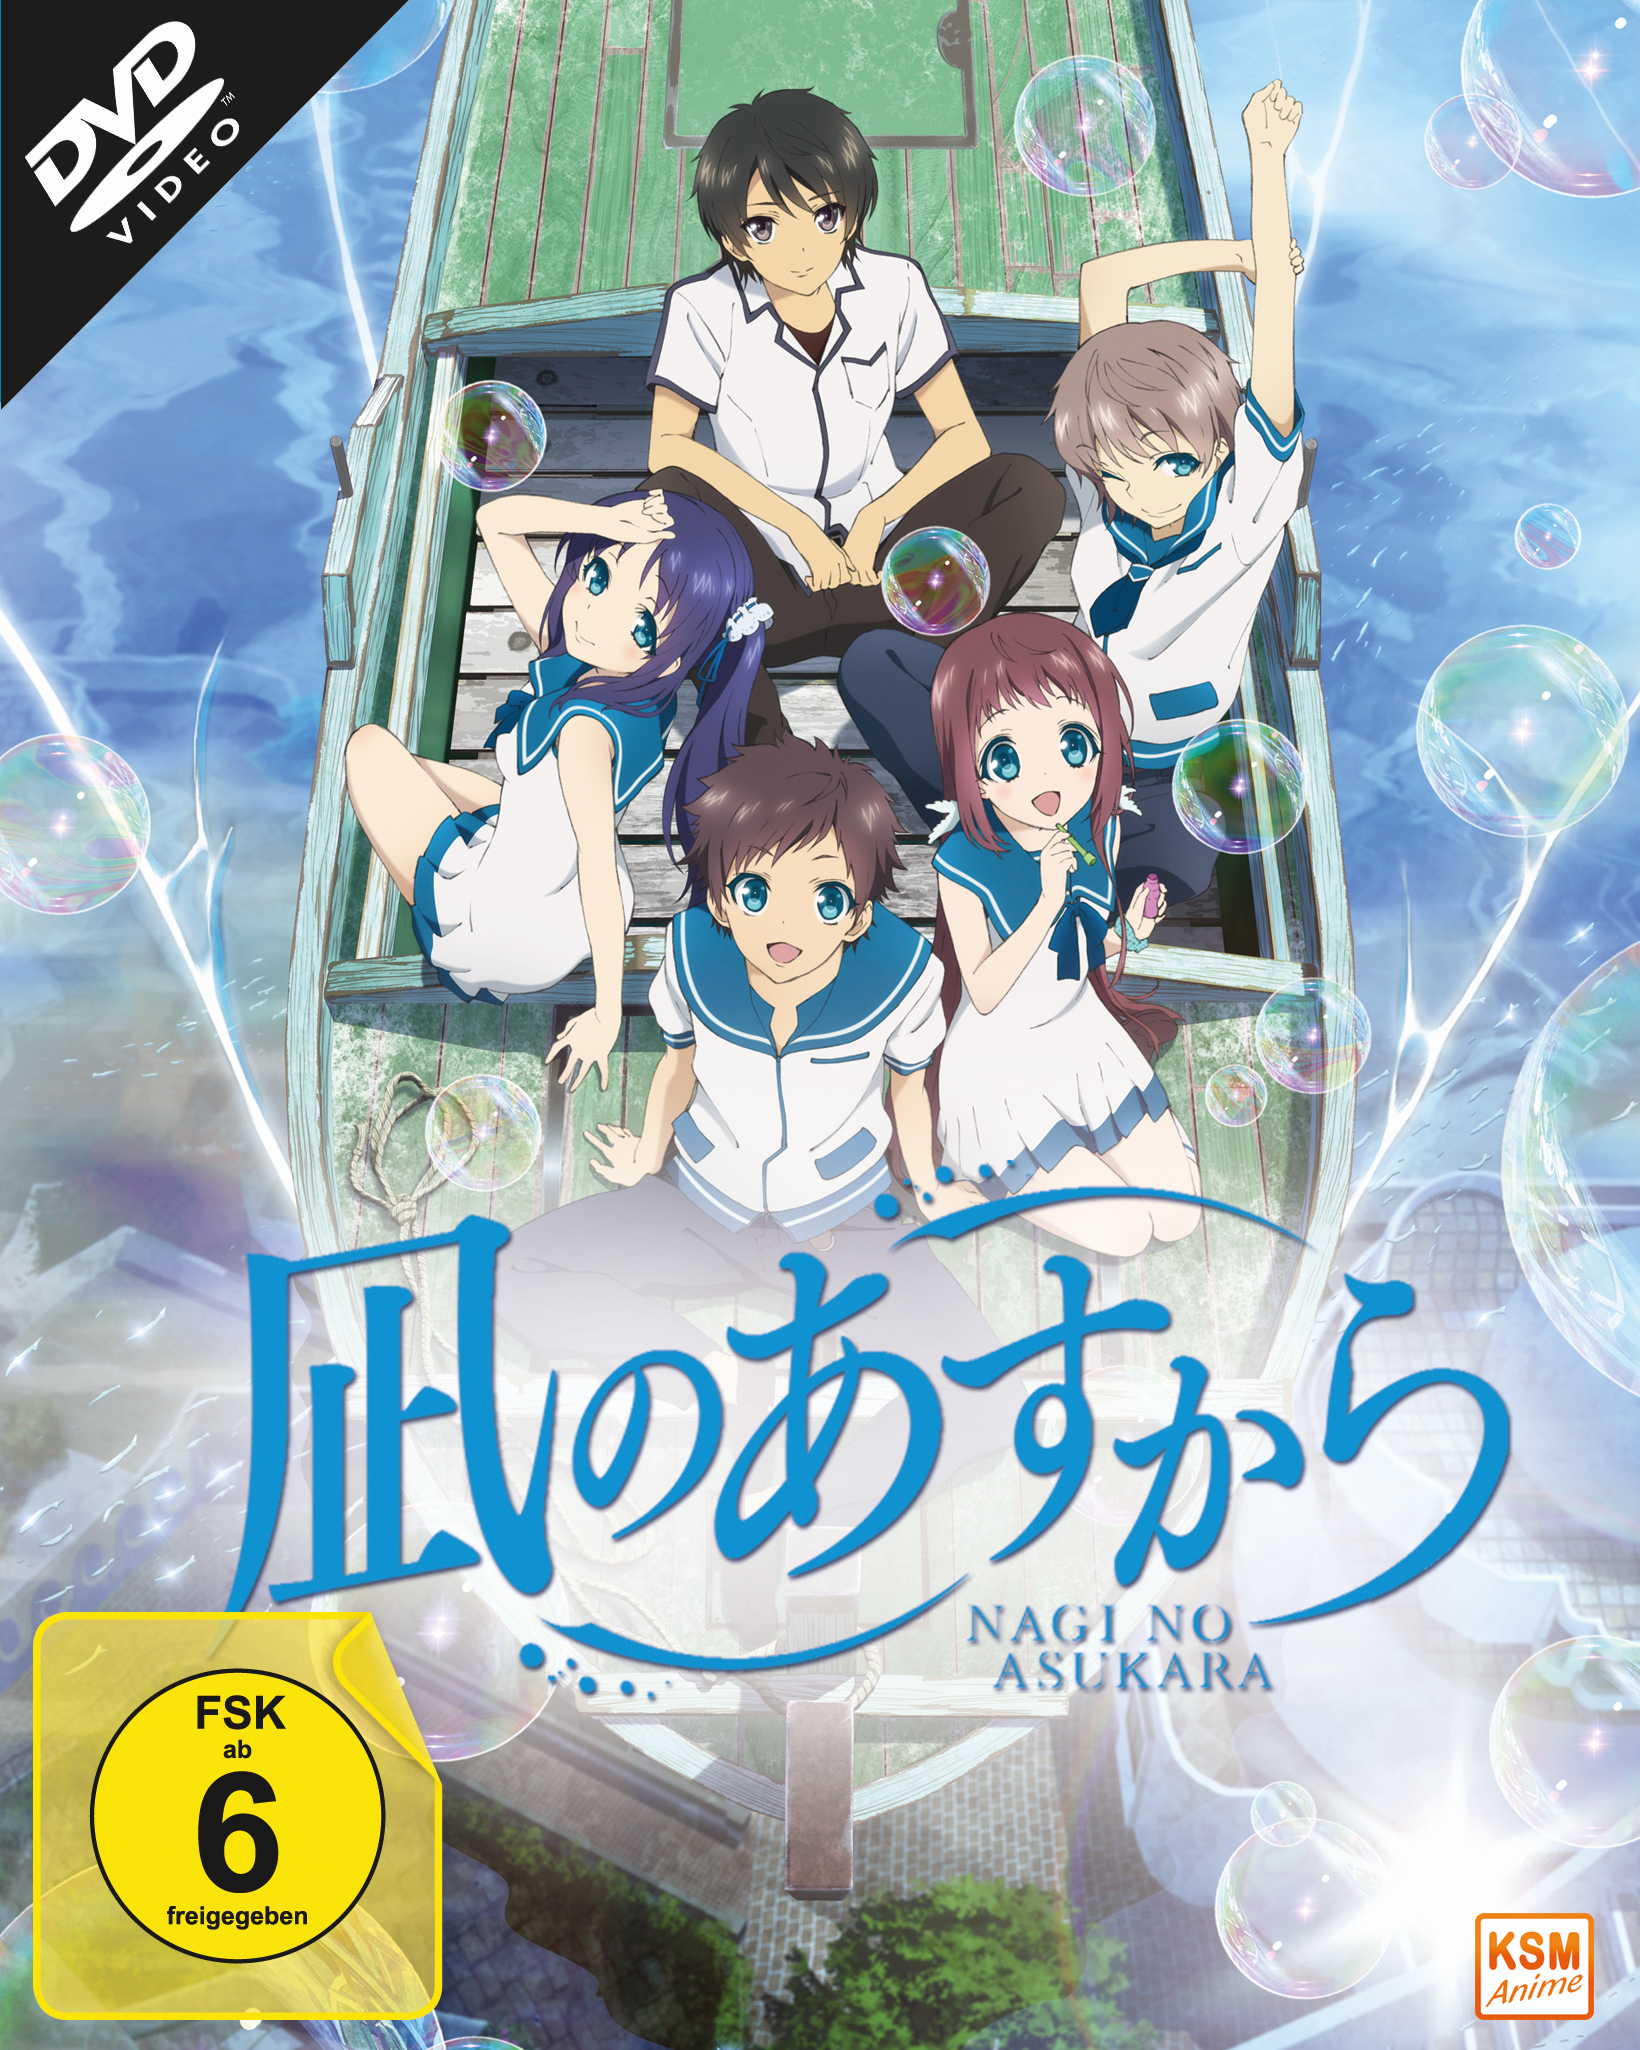 Nagi no Asukara - Volume 1: Episode 01-06 im Sammelschuber [DVD]